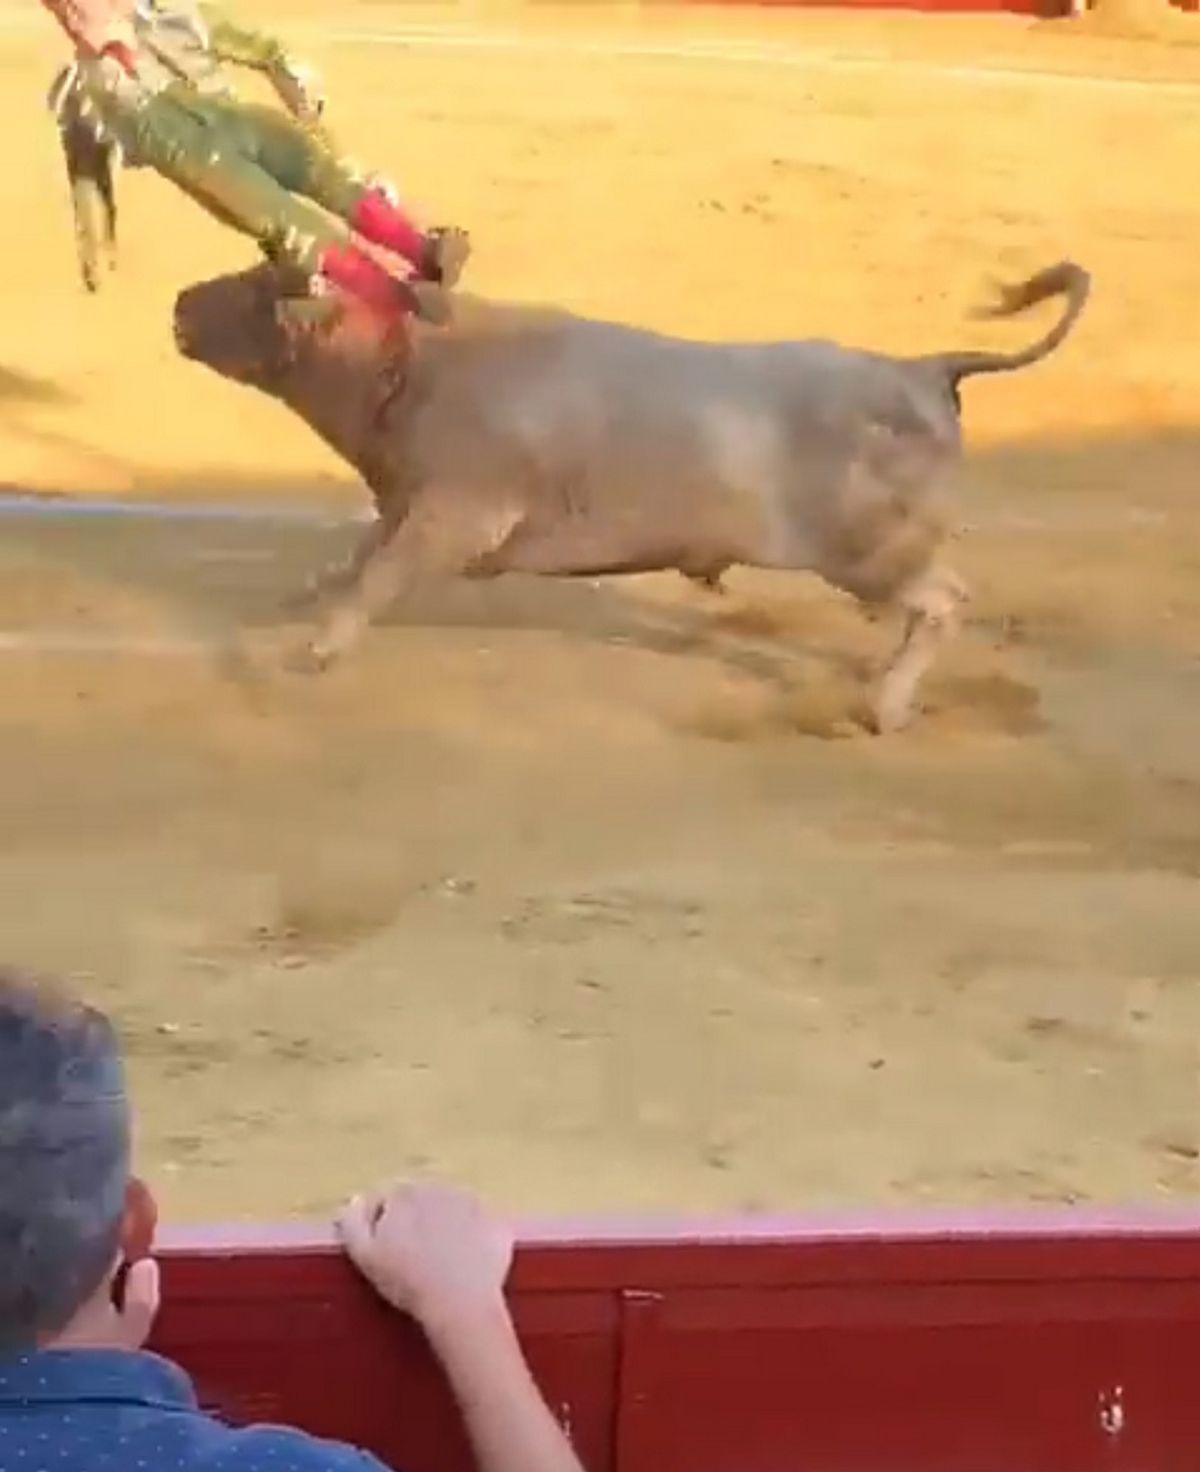 Des images choc diffusées en ligne montrent Conquero narguant un taureau avant d'être encorné et projeté en l'air.